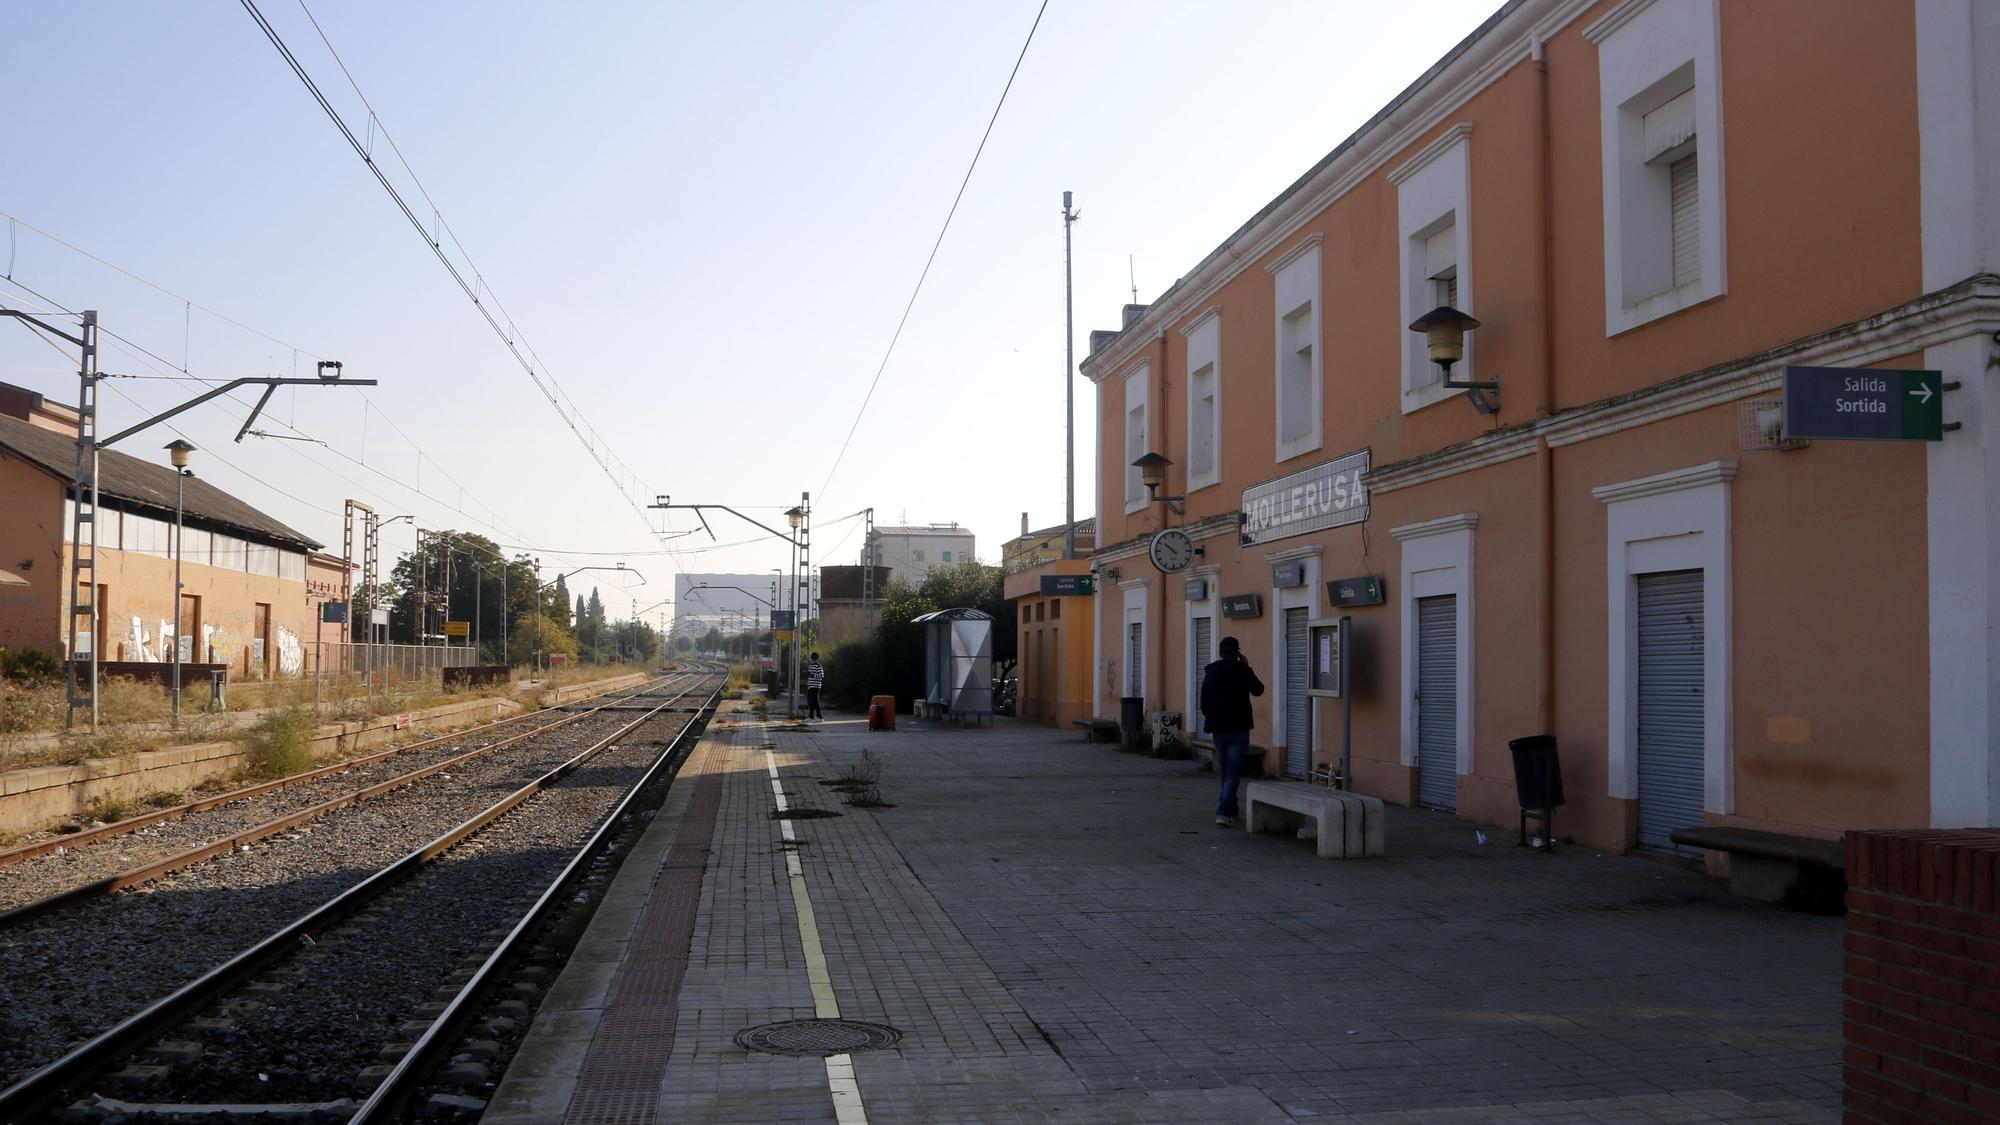 Pla general de l'estació de tren de Mollerussa, de la R12, amb dos persones esperant el tren, el 19 d'octubre de 2021. (Horitzontal)   foto: ORIOL BOSCH / ACN